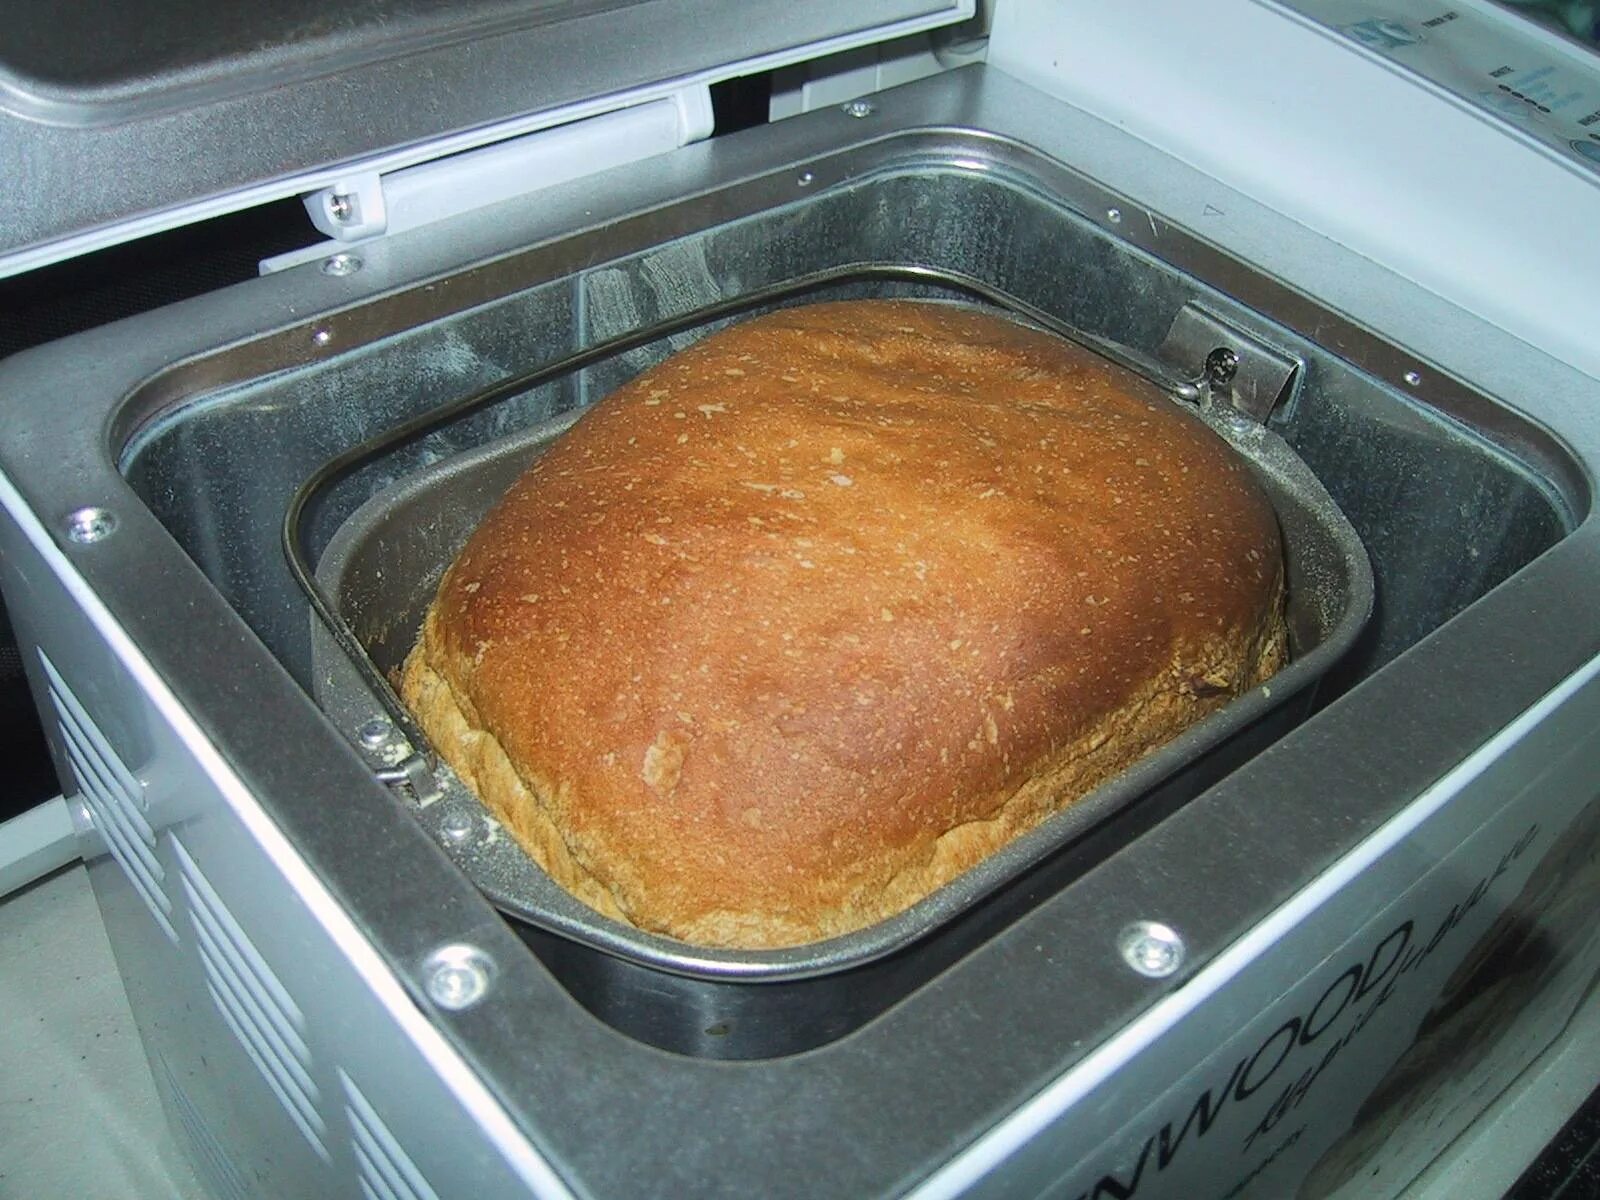 Хлеб в хлебопечке. Хлебопечка с хлебом. Выпечка хлеба в хлебопечке. Домашний хлеб из хлебопечки. Печь в хлебопечке рецепты